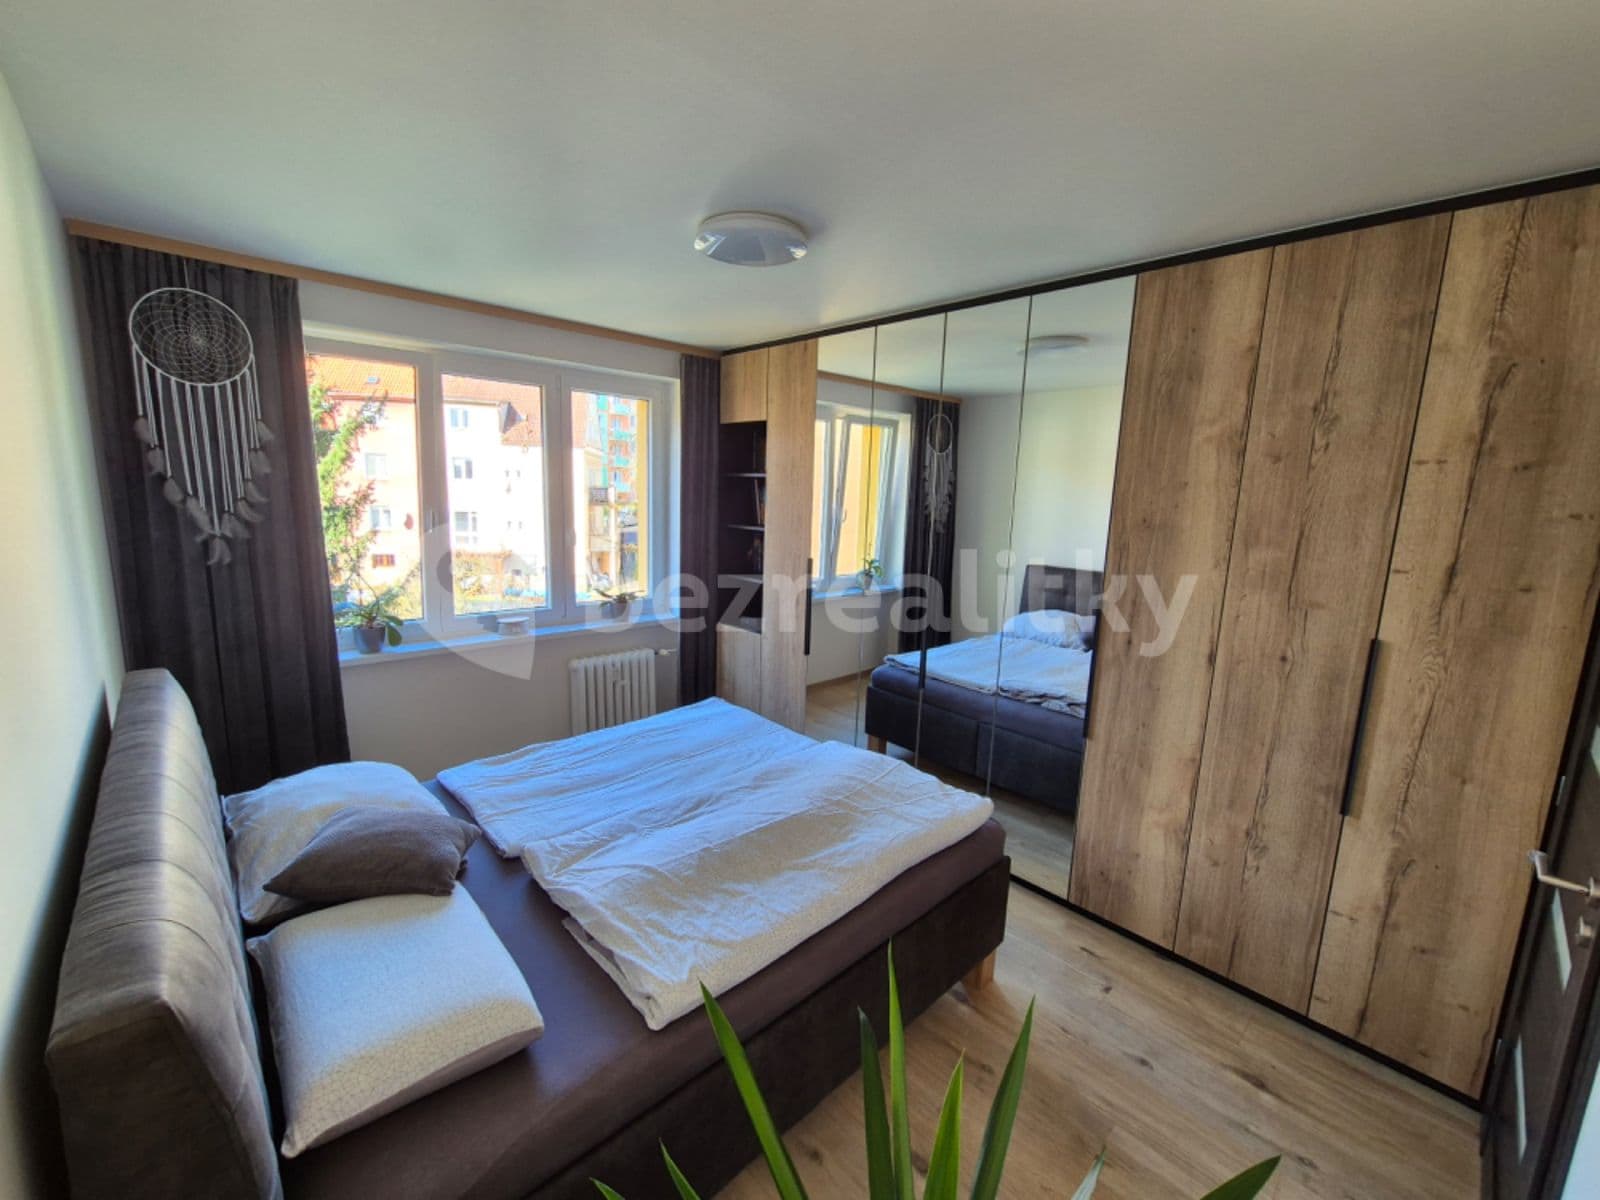 2 bedroom with open-plan kitchen flat for sale, 62 m², Kamenická, Děčín, Ústecký Region